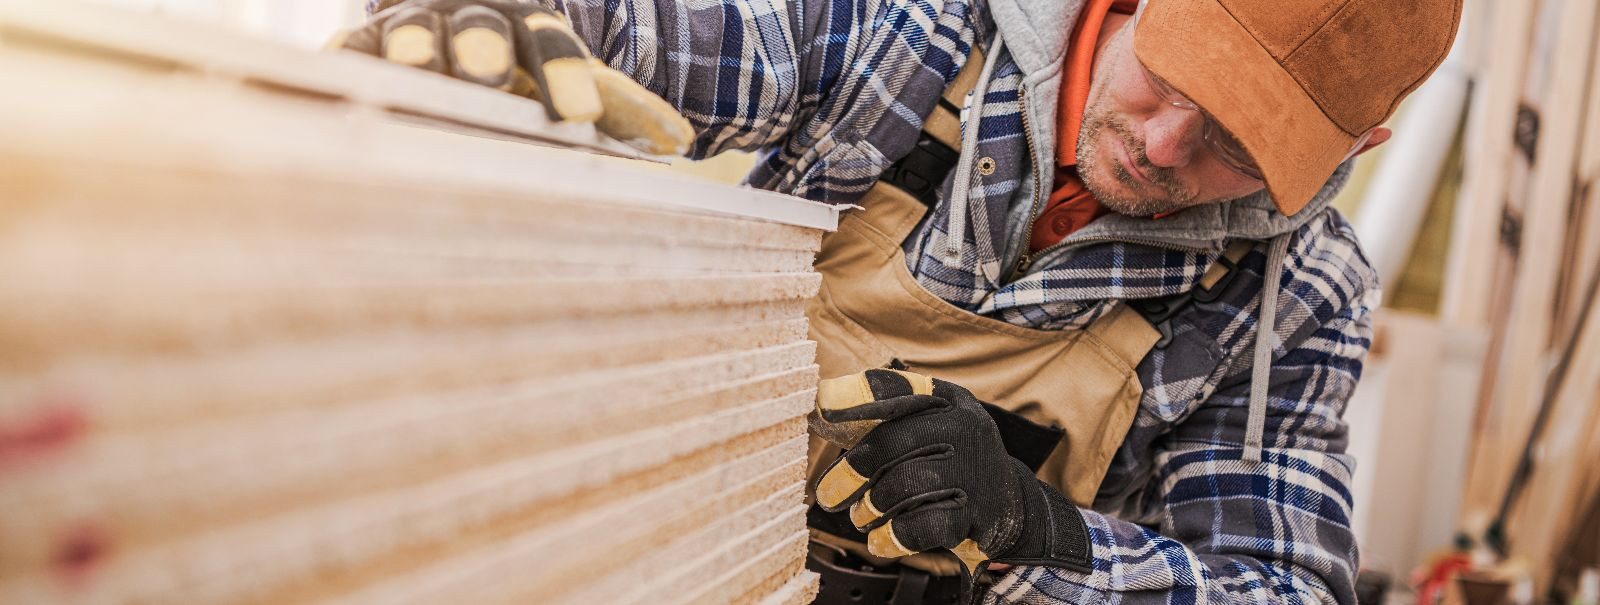 Tänapäeva ehitus- ja sisustusmaailmas on puitplaatmaterjalid mänginud olulist rolli nii funktsionaalsuse kui ka esteetika seisukohalt. Üks ettevõte, kes on järj